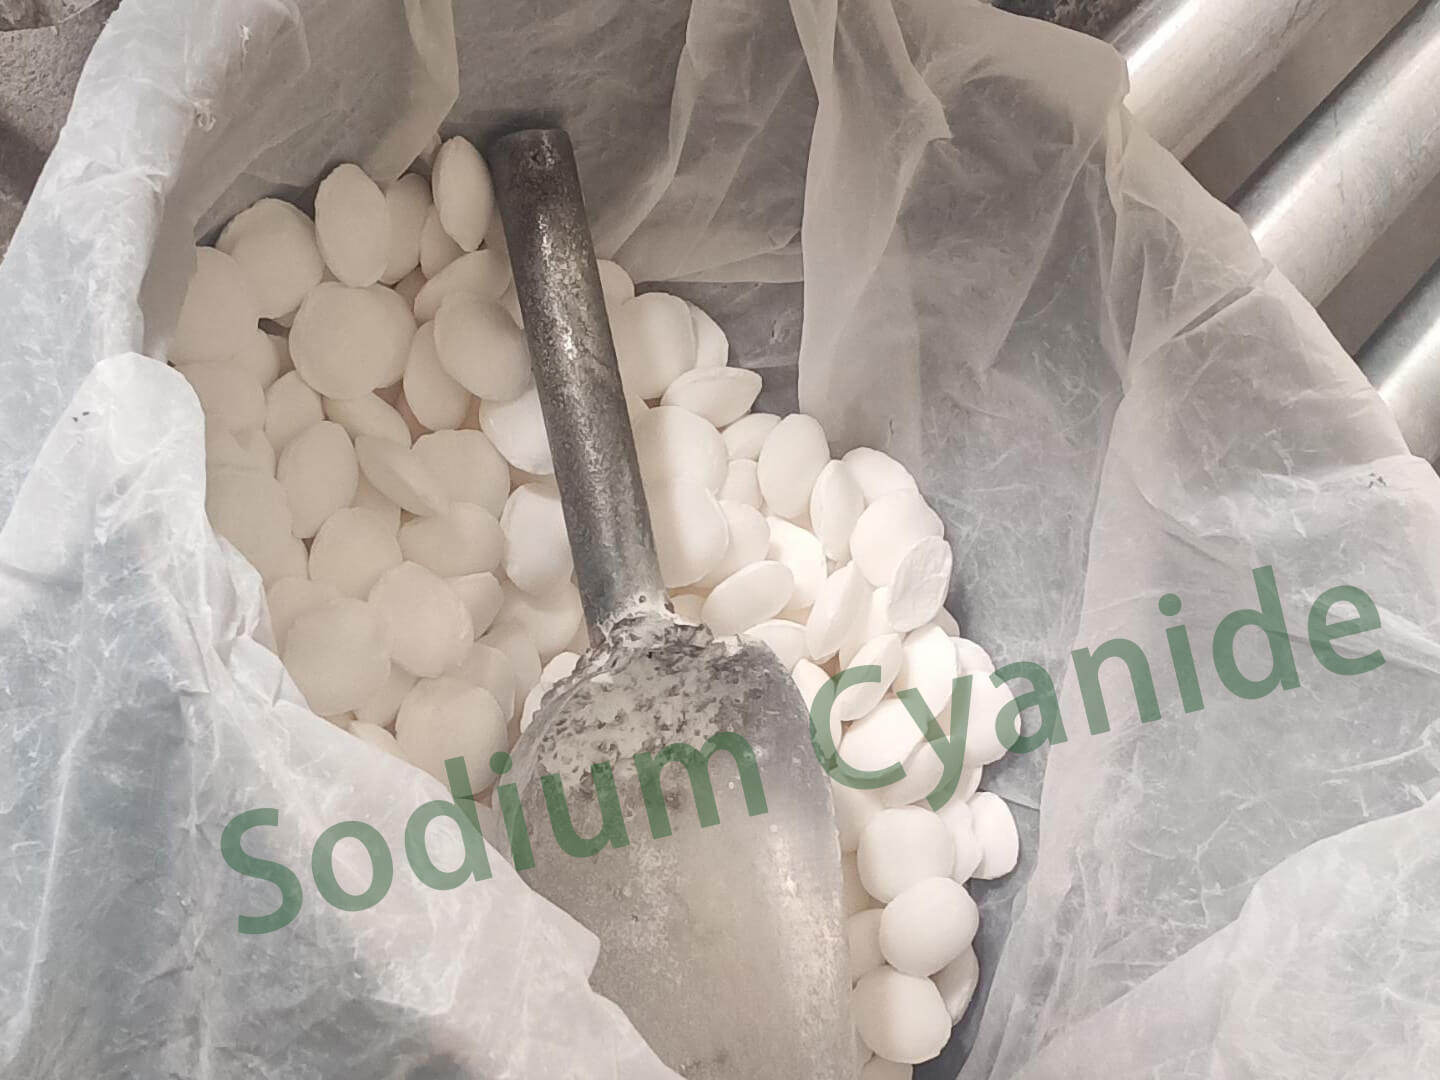 Cyanure de sodium - Lorsque vous utilisez du cyanure, comment pouvez-vous être sûr qu'il est sûr et efficace ?